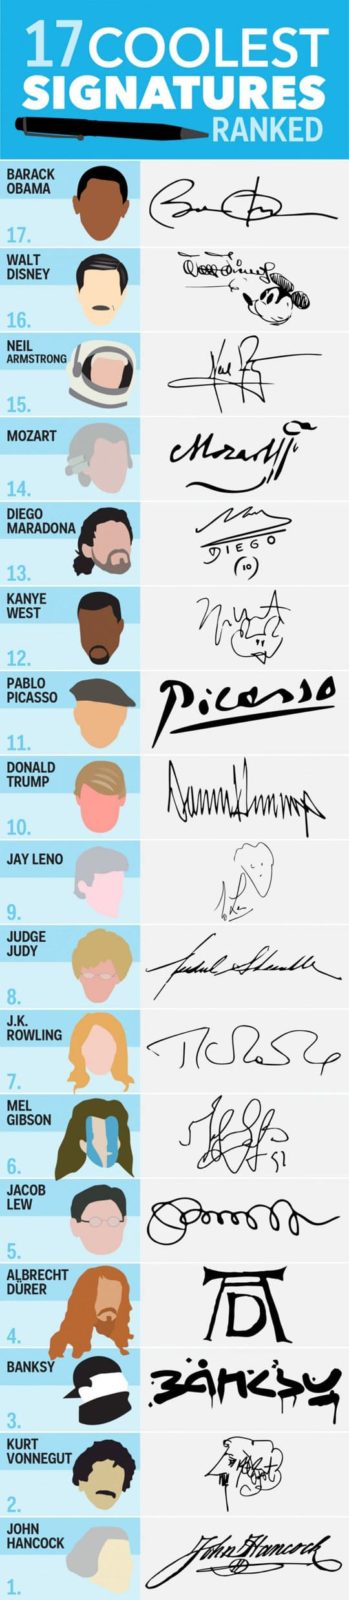 17 coolest signatures ranked